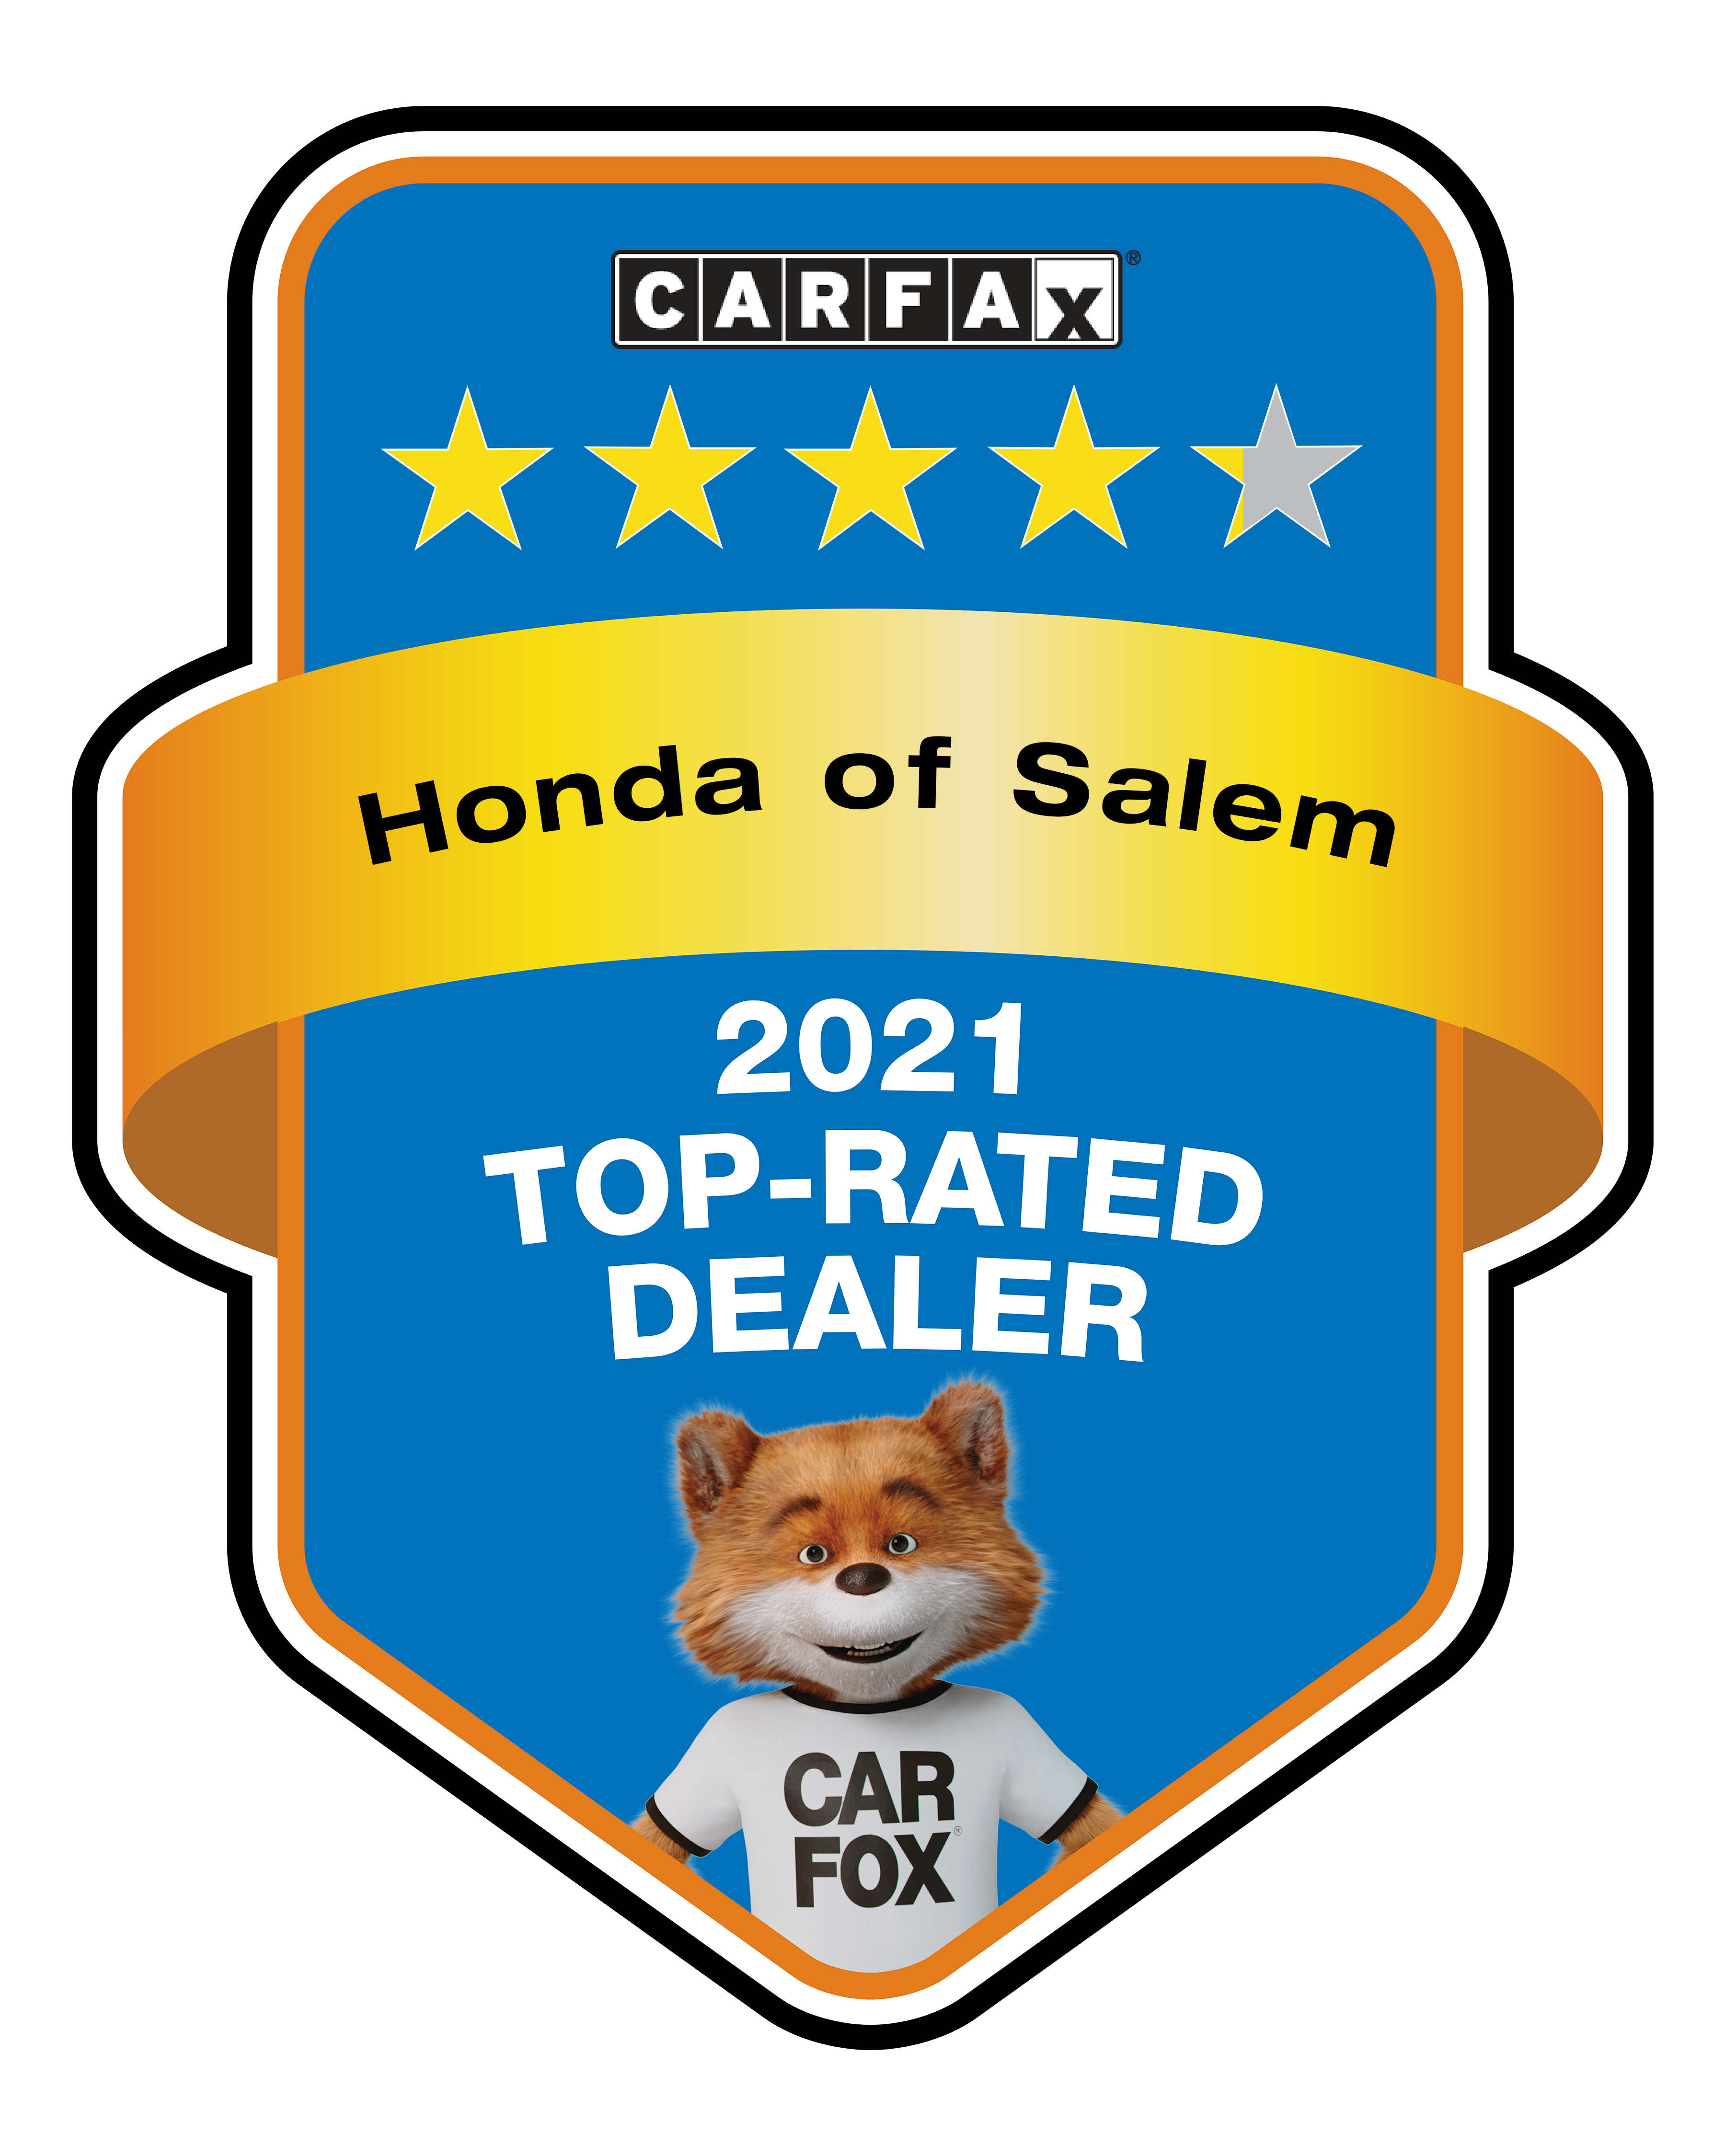 CarFax 2021 Top-Rated Dealer Award - Honda of Salem